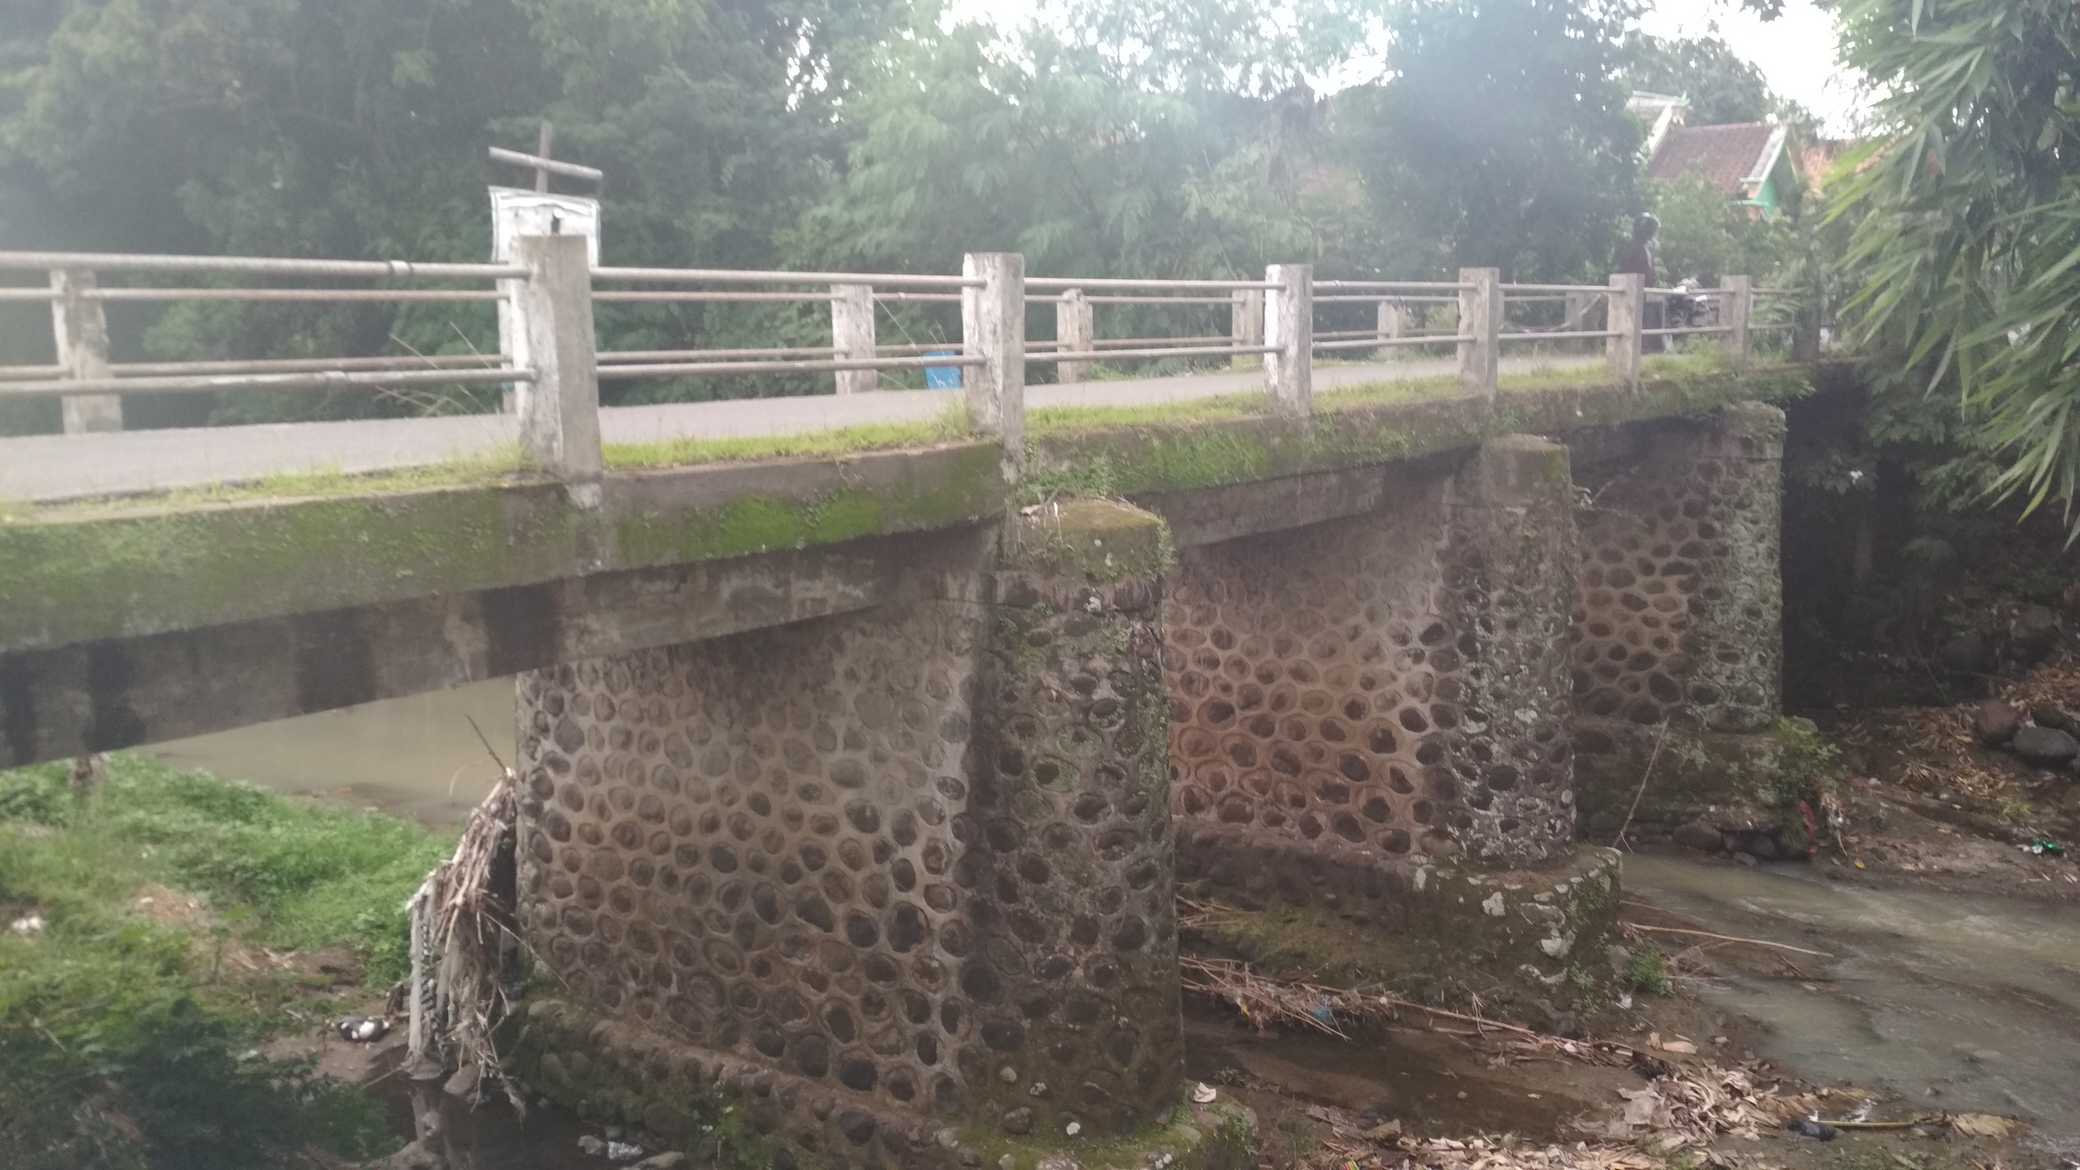 Jembatan Bejing - Pengkok 01b